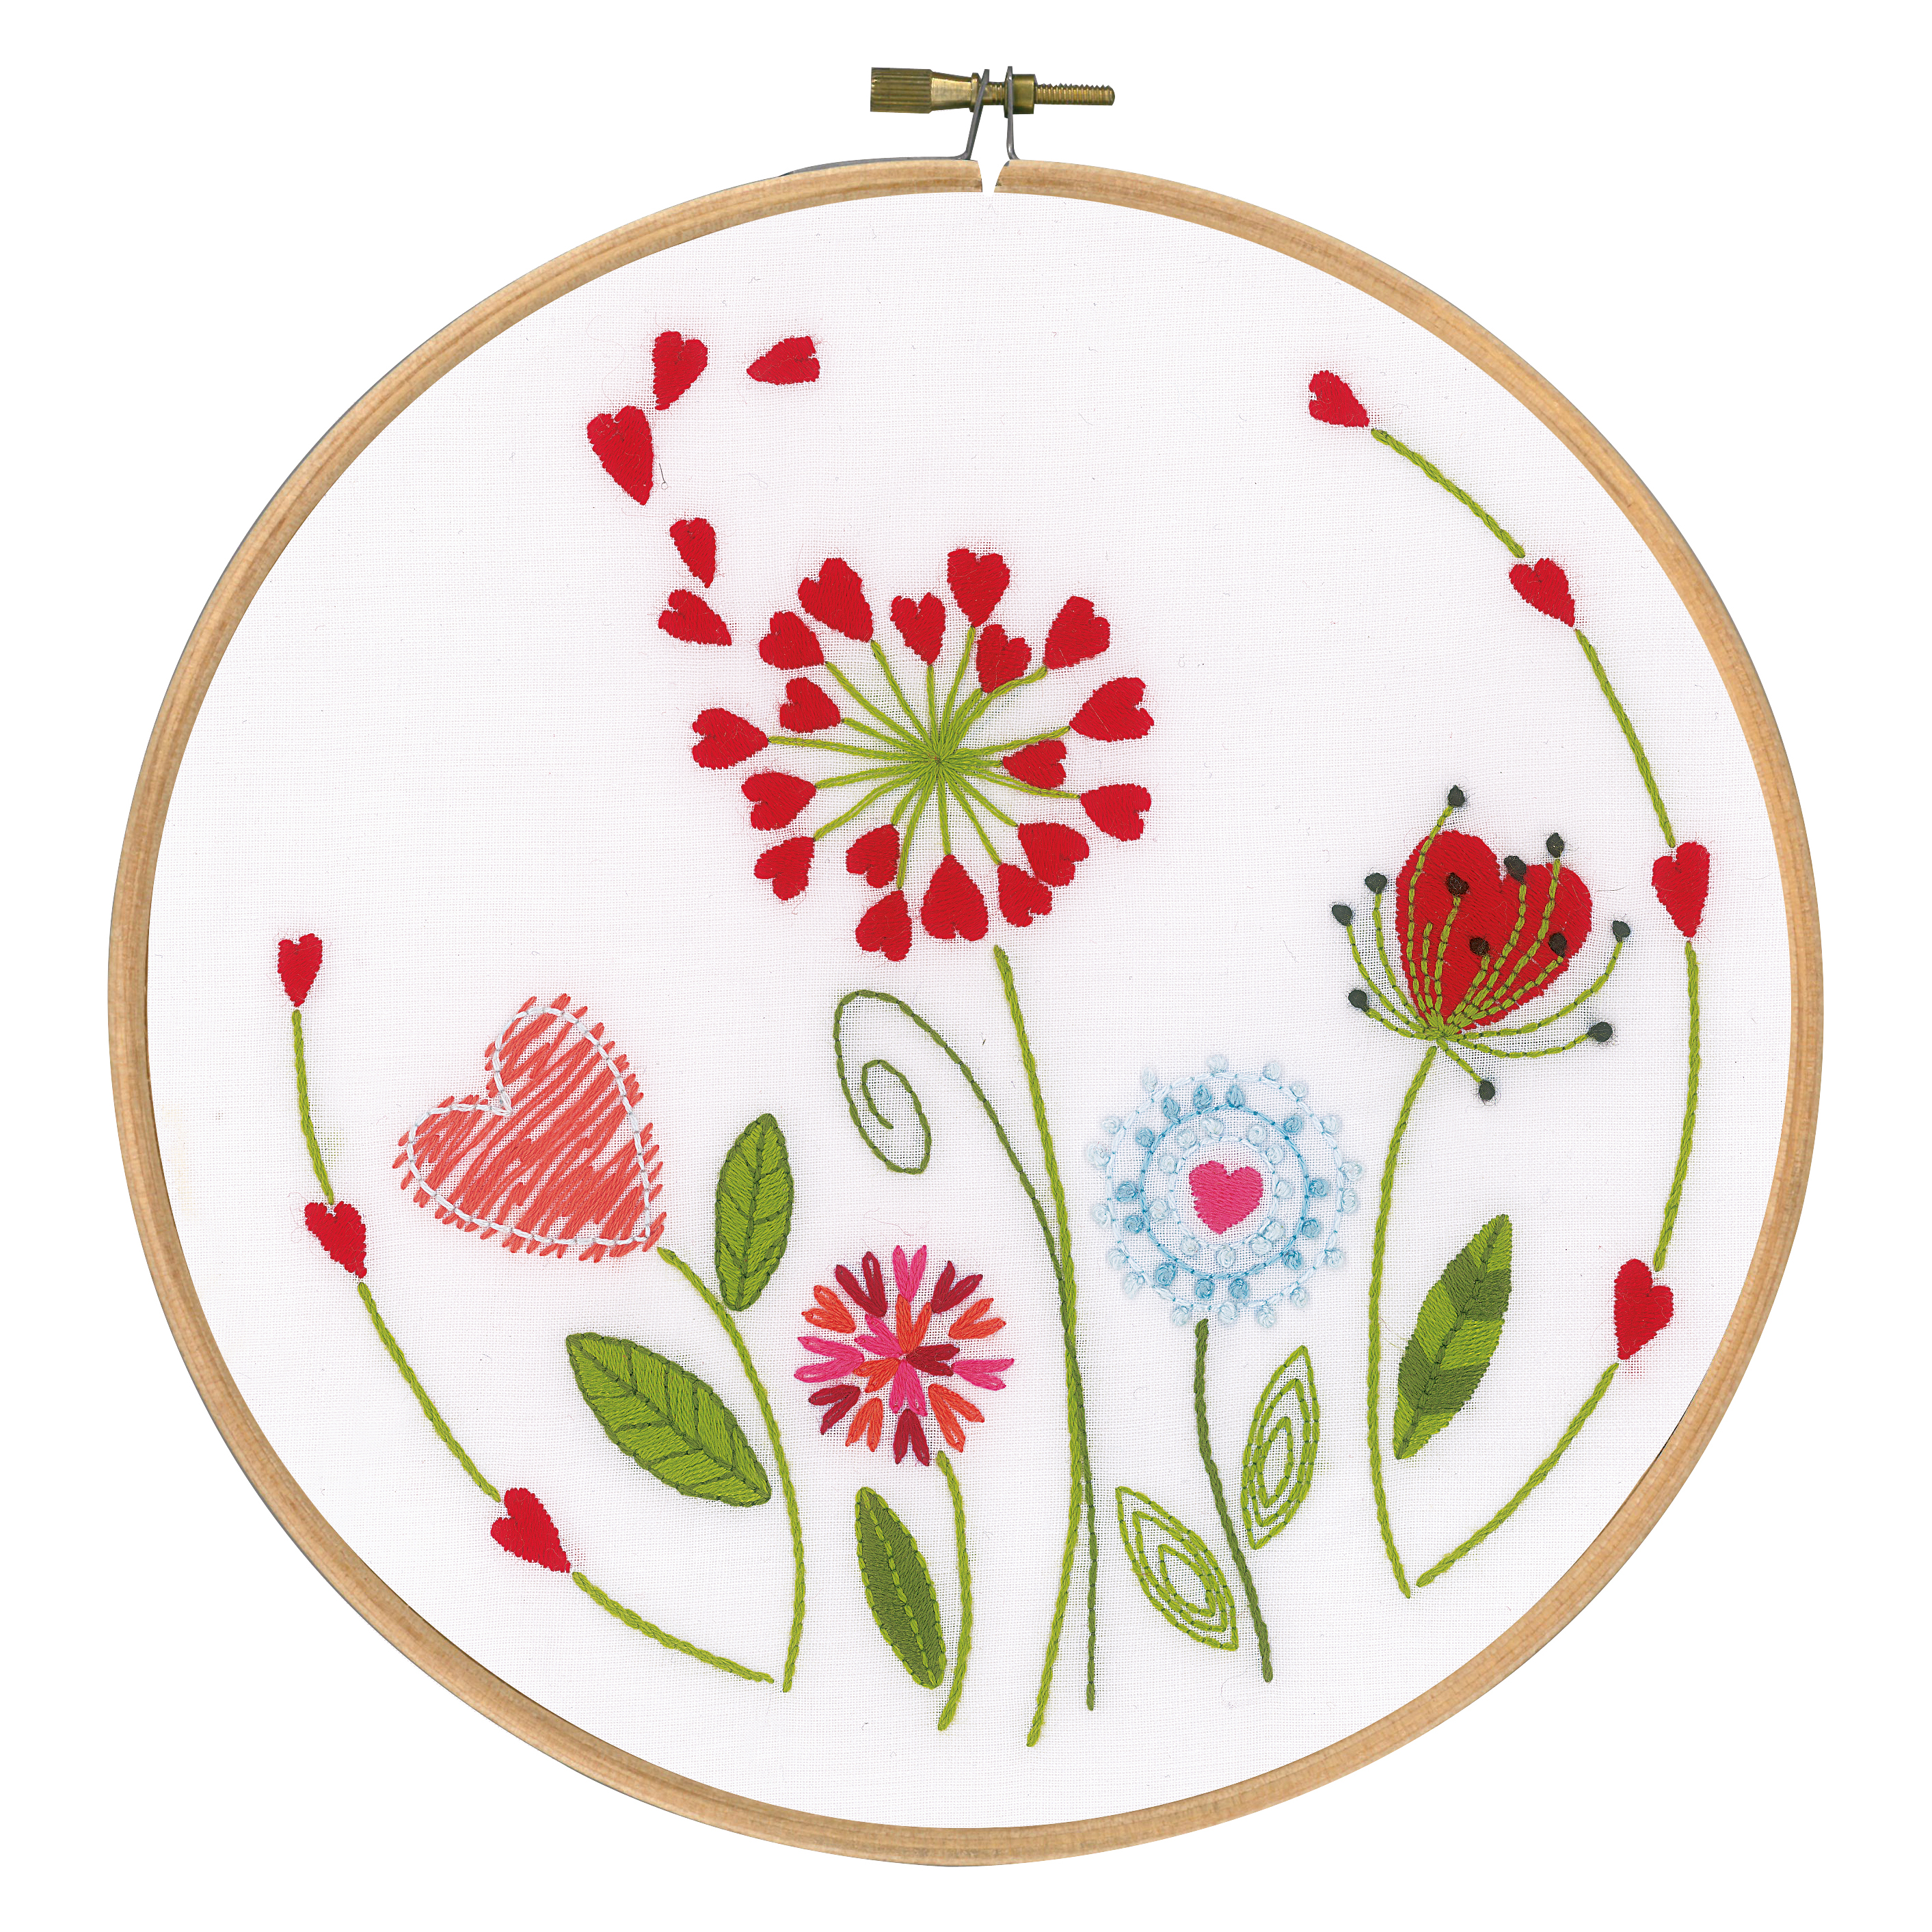 embroidery hoop gallery | Embroidery hoop wall, Embroidery wall art, Flower  embroidery designs